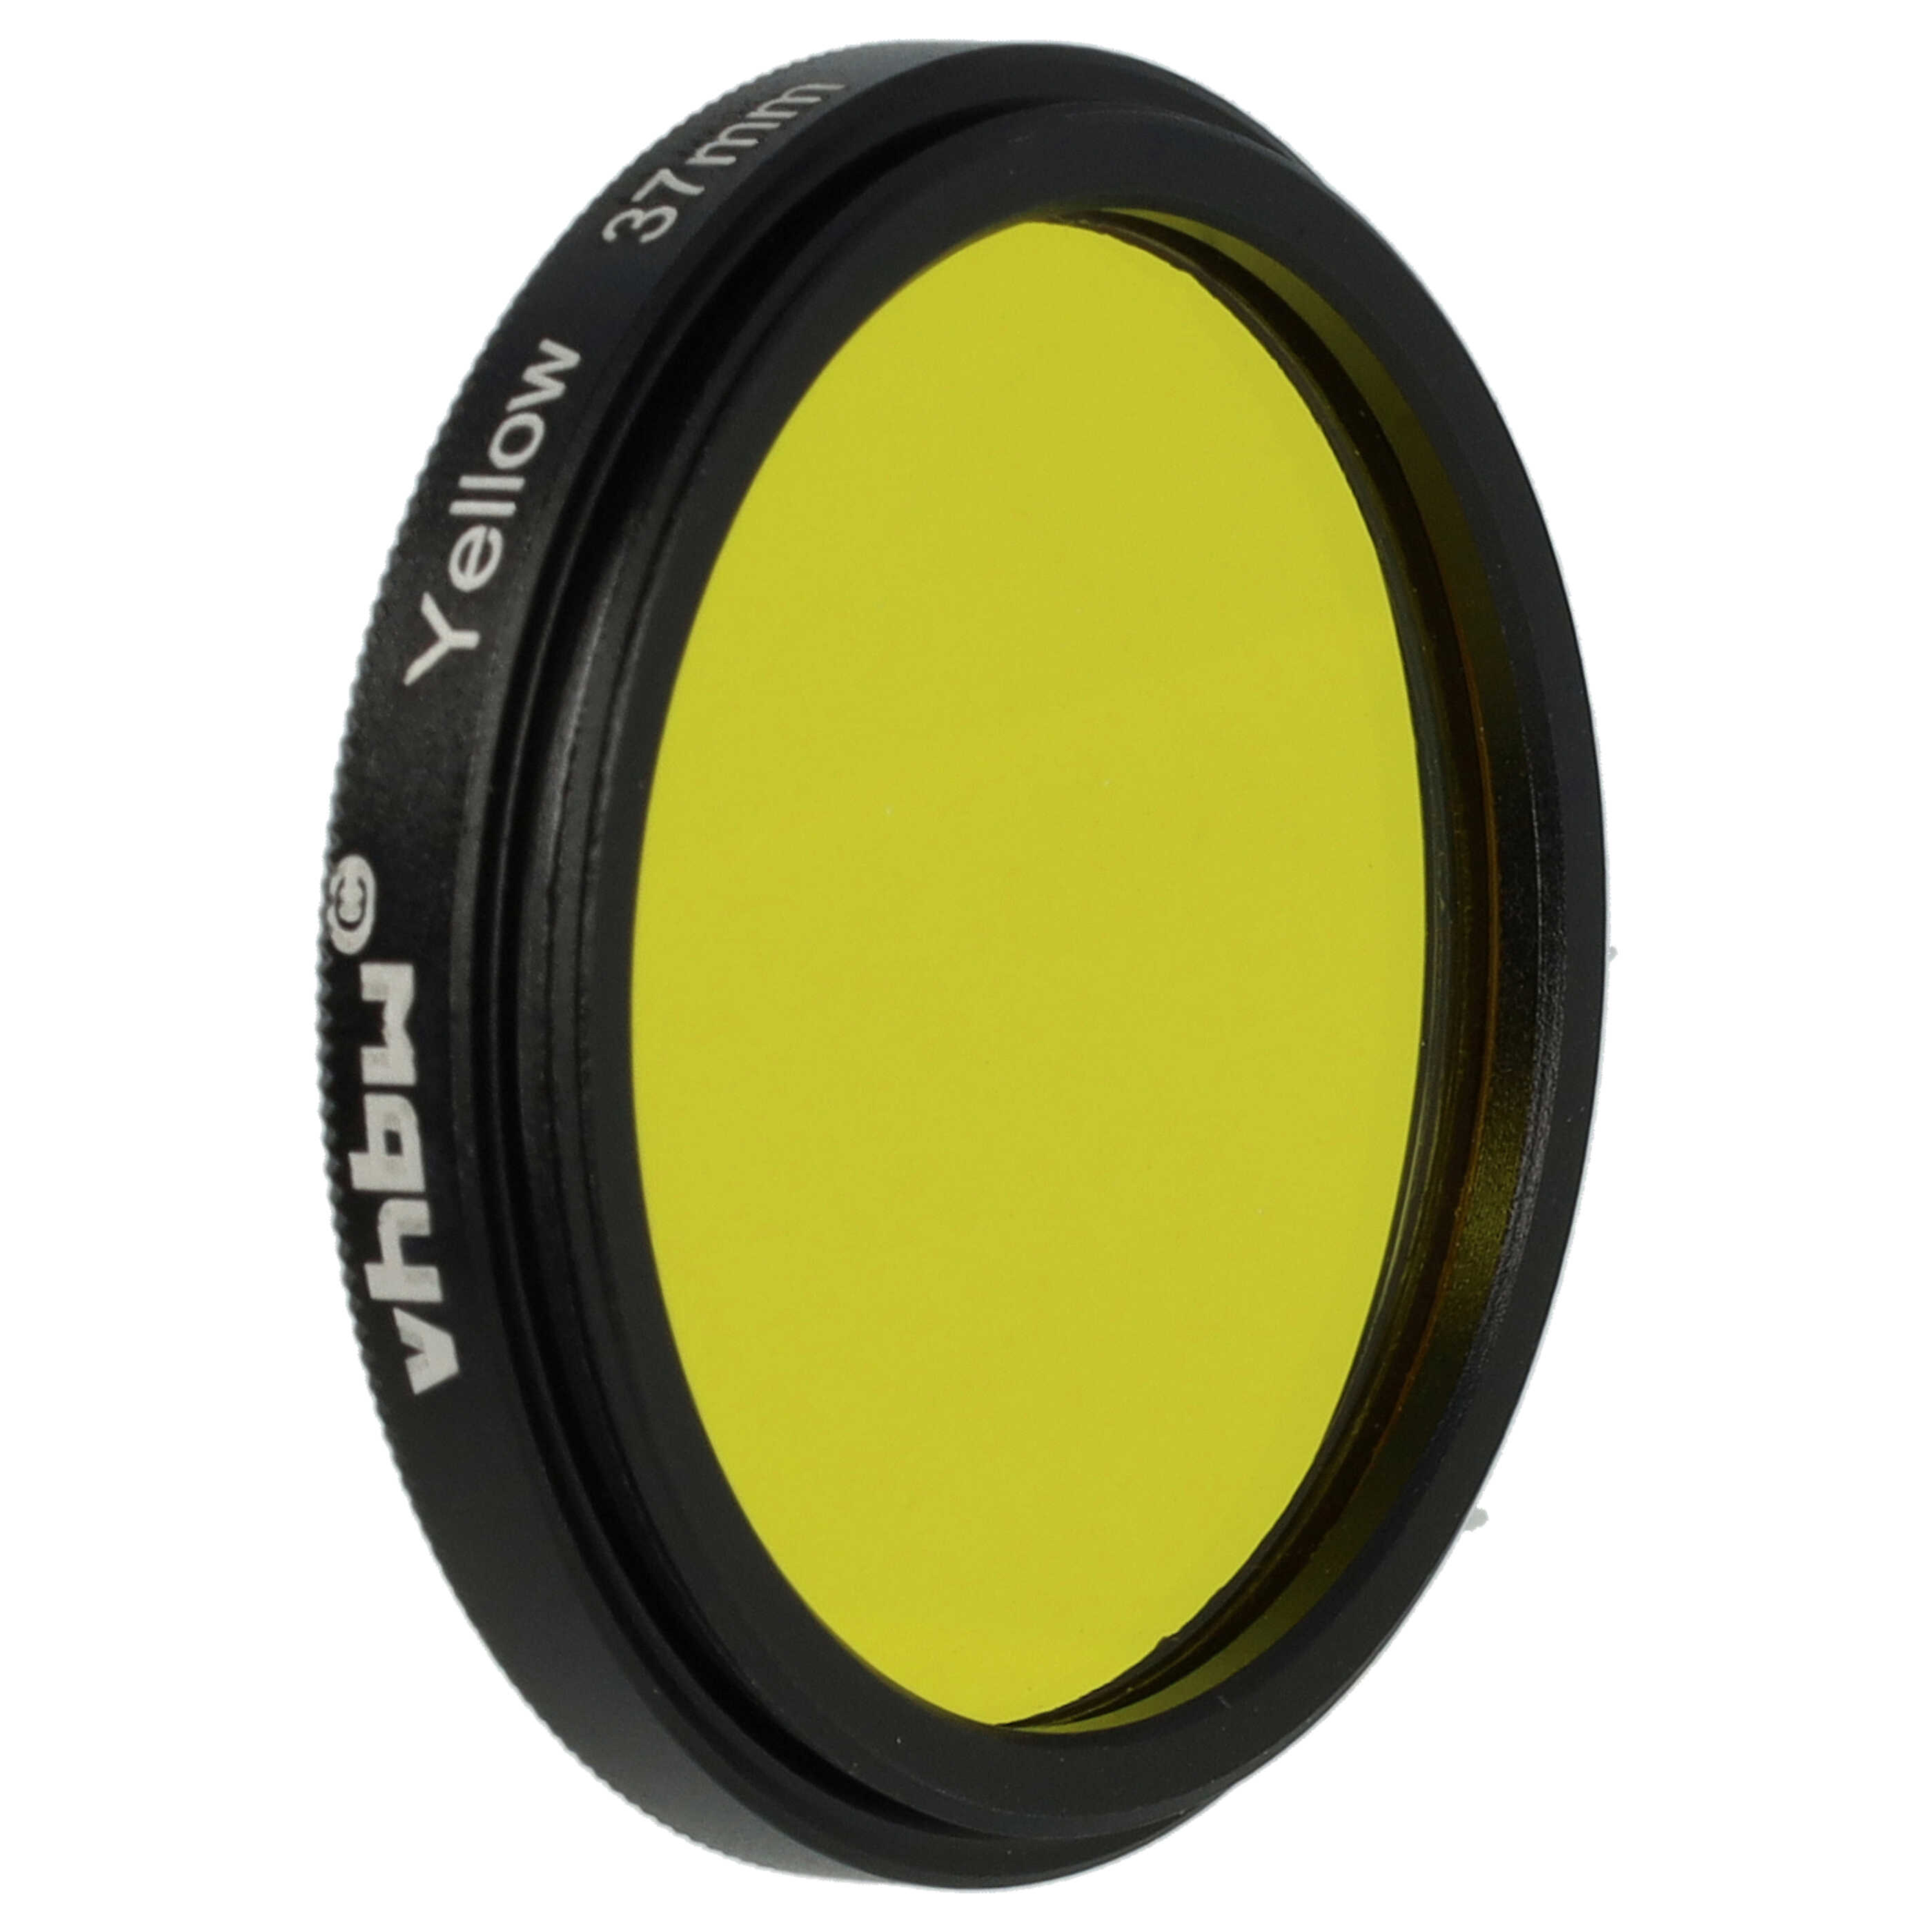 Filtre de couleur jaune pour objectifs d'appareils photo de 37 mm - Filtre jaune